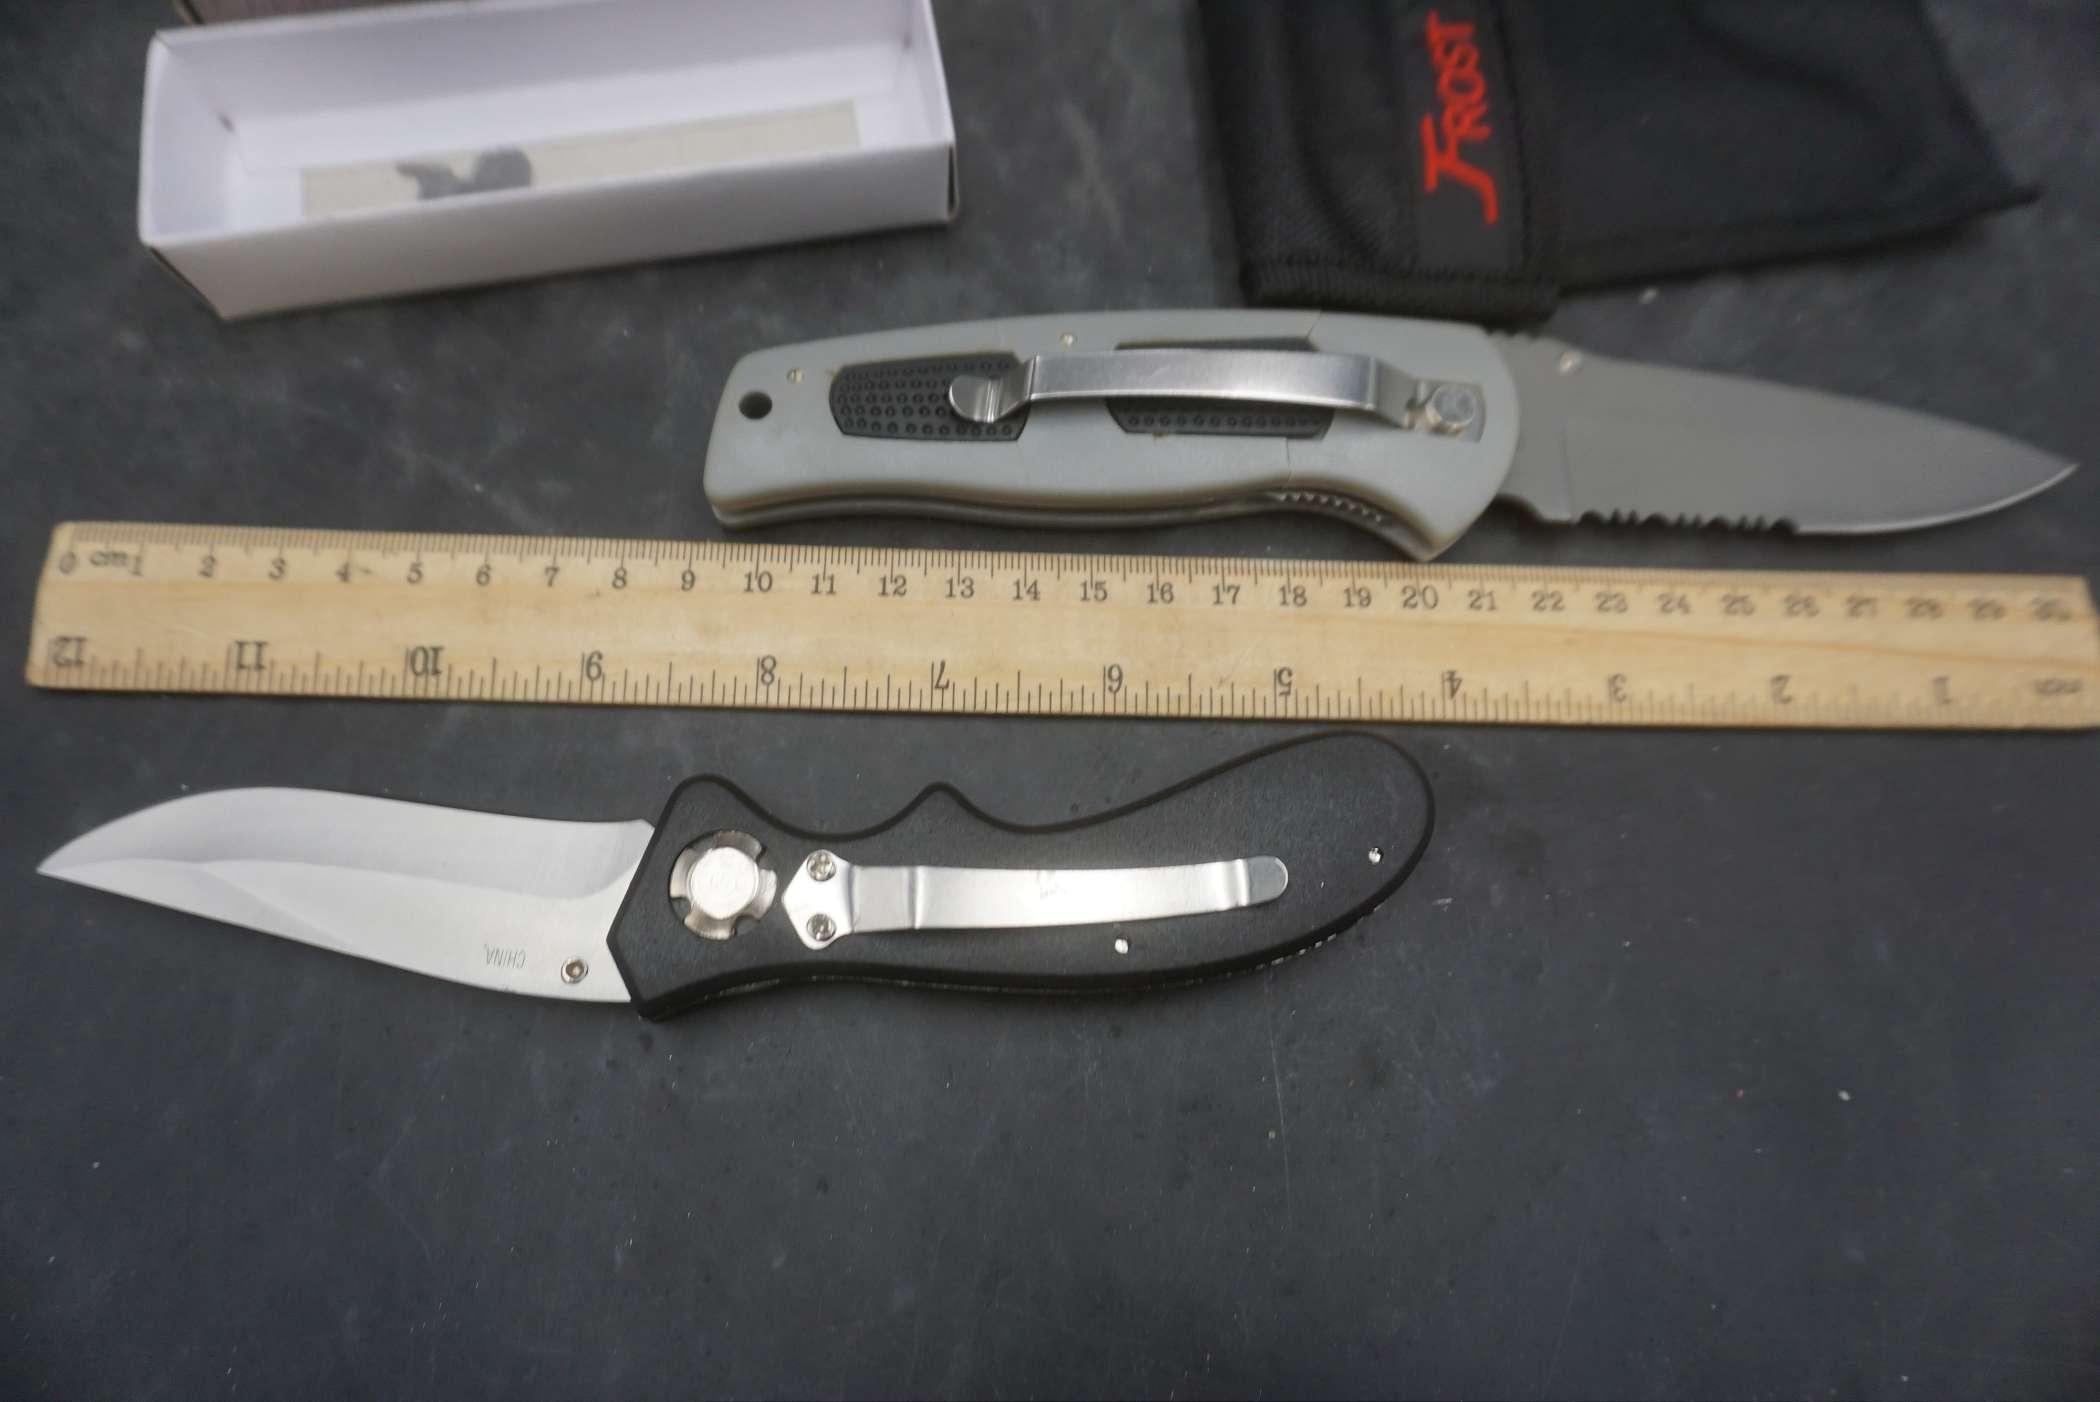 2 Folding Knives - Delta Ranger & Cheyenne Skinner